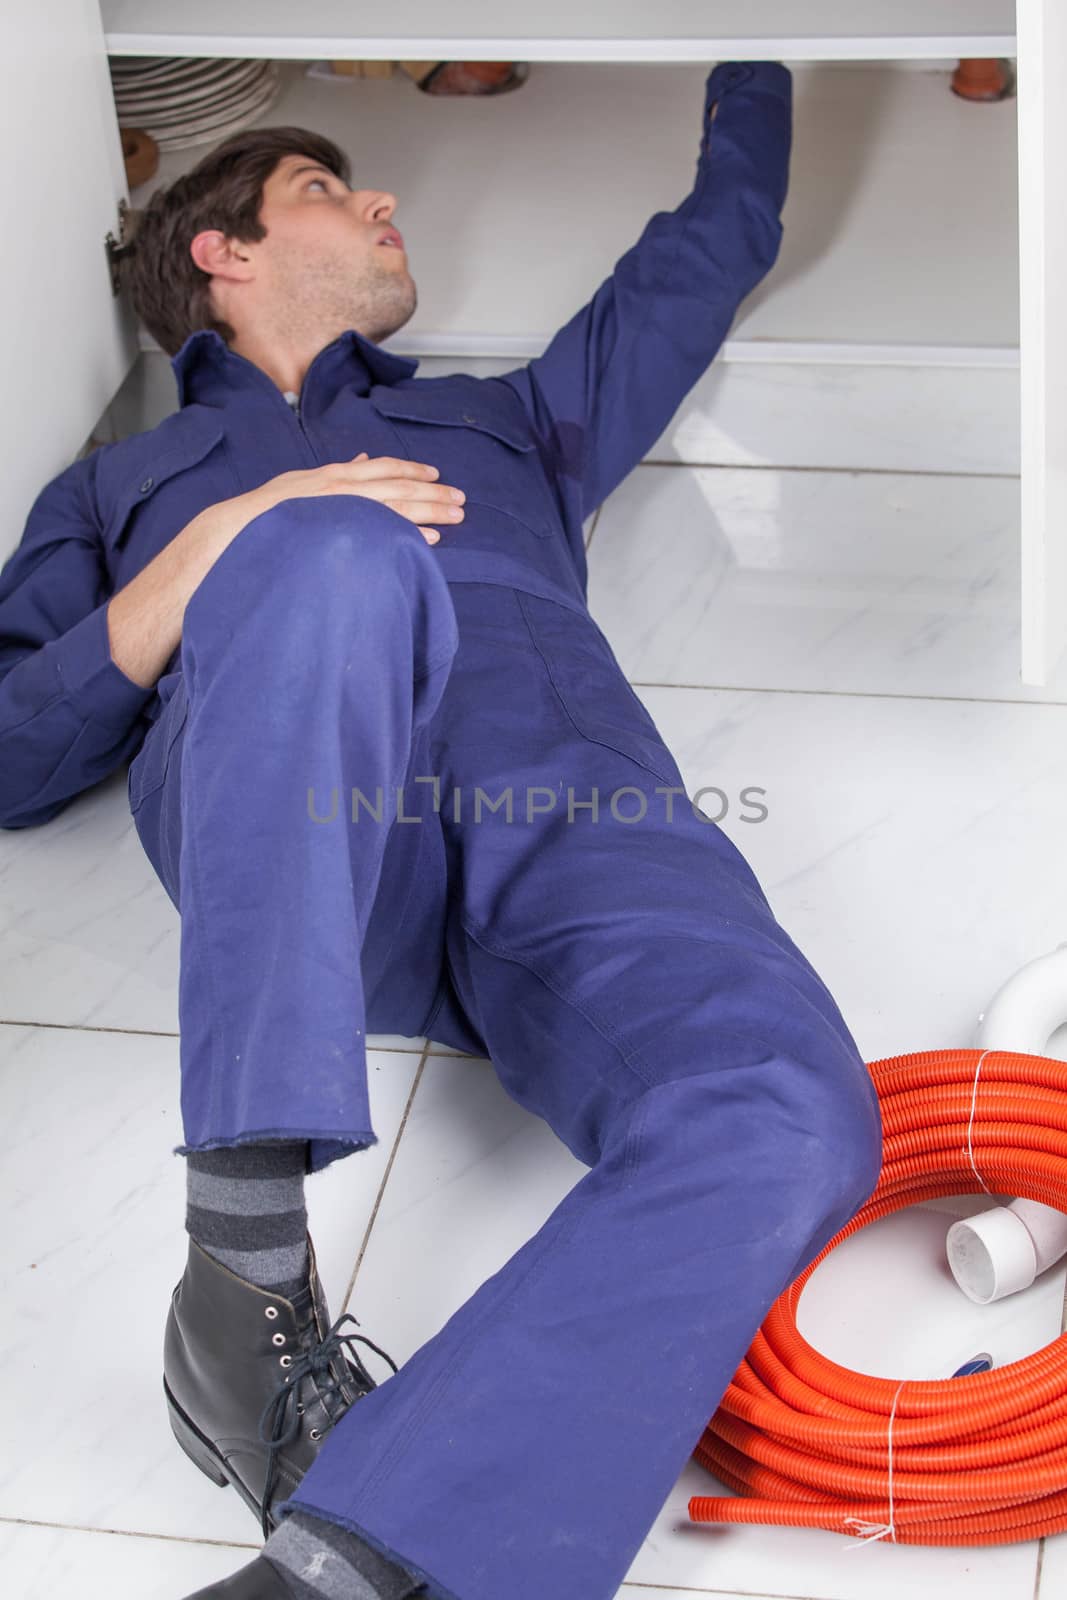 Plumber working lying on the floor